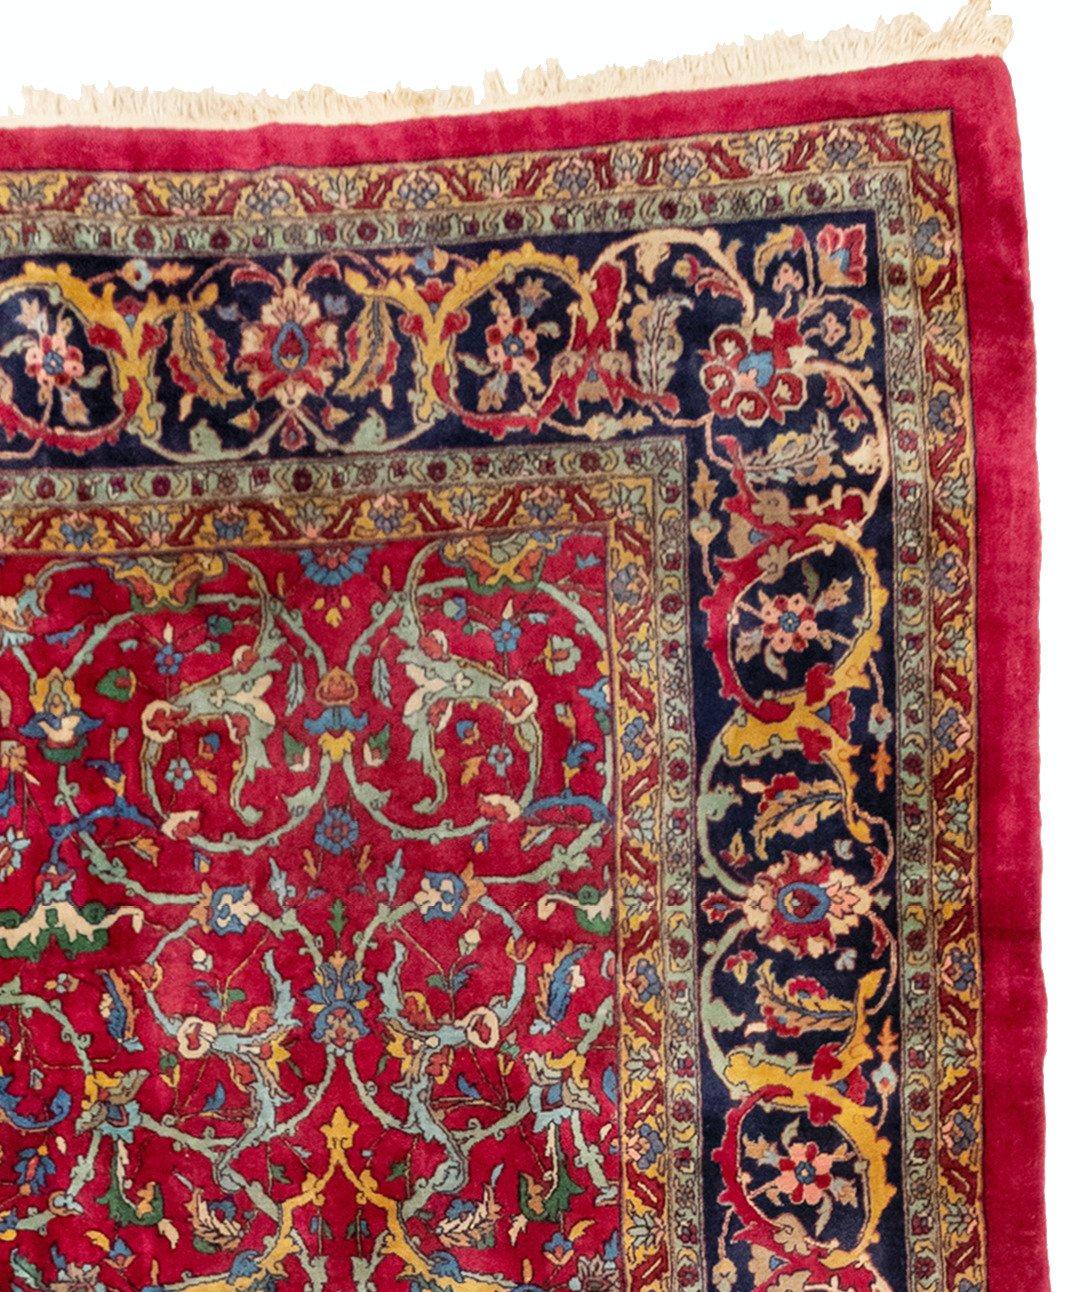 Sarouk Farahan Oversize Antique Persian Floral Red Sarouk Rug c. 1880-1900 (12.6 x 22.9 ft) For Sale